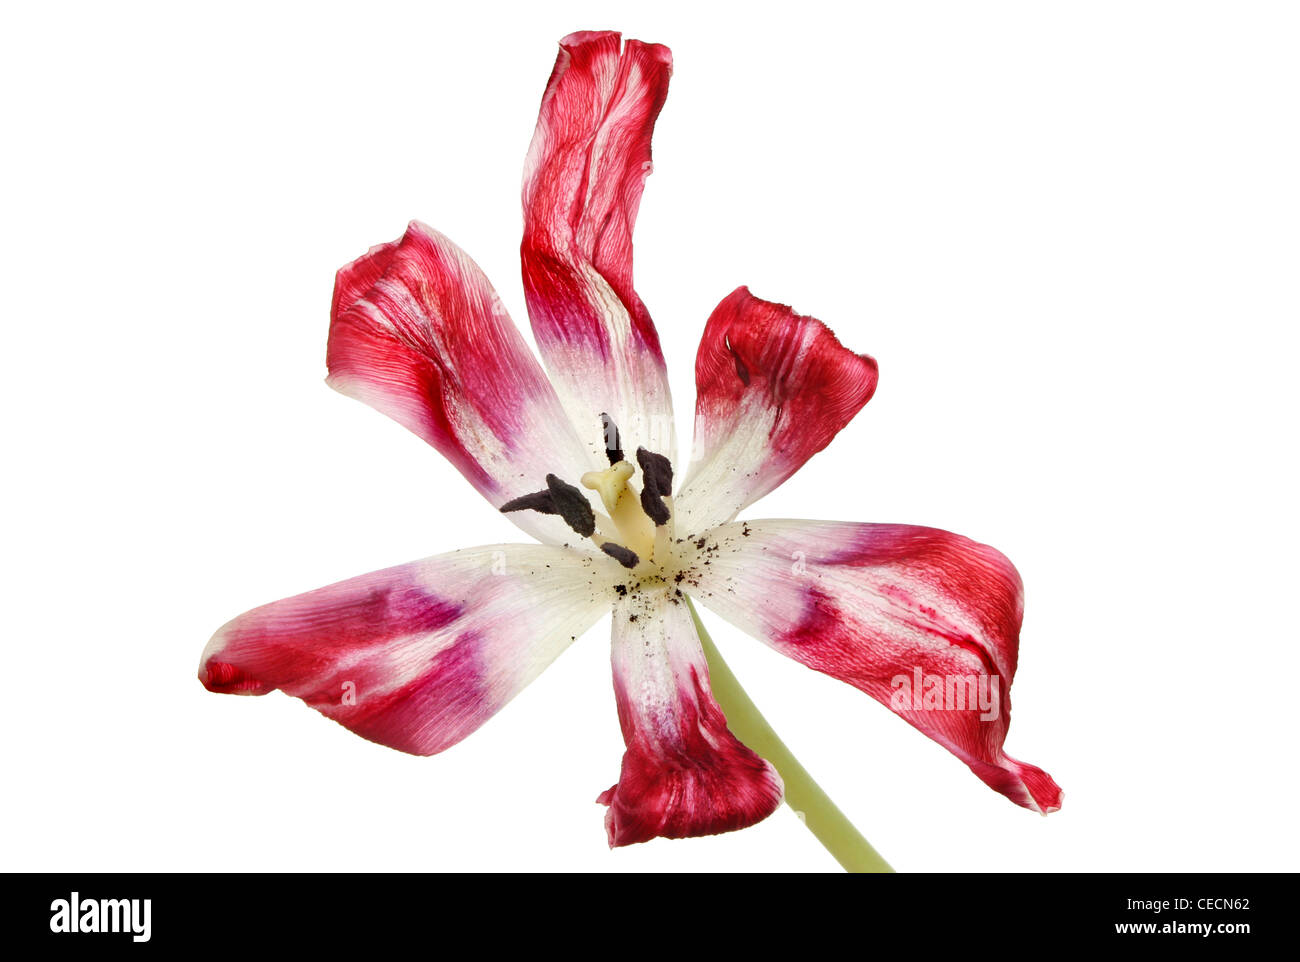 Morir tulip flower aislado contra un blanco Foto de stock